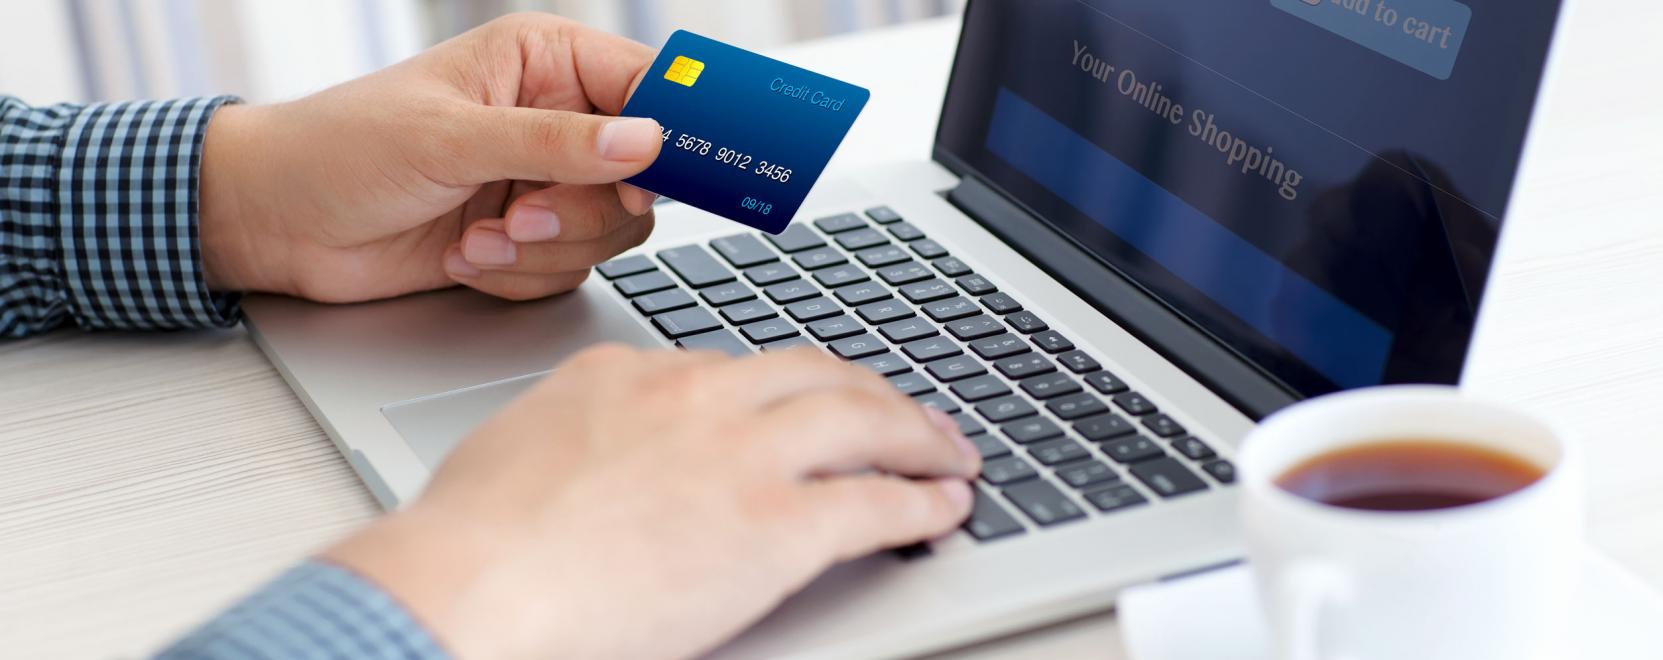 Bankkártyás csalások: így vigyázunk az adatainkra